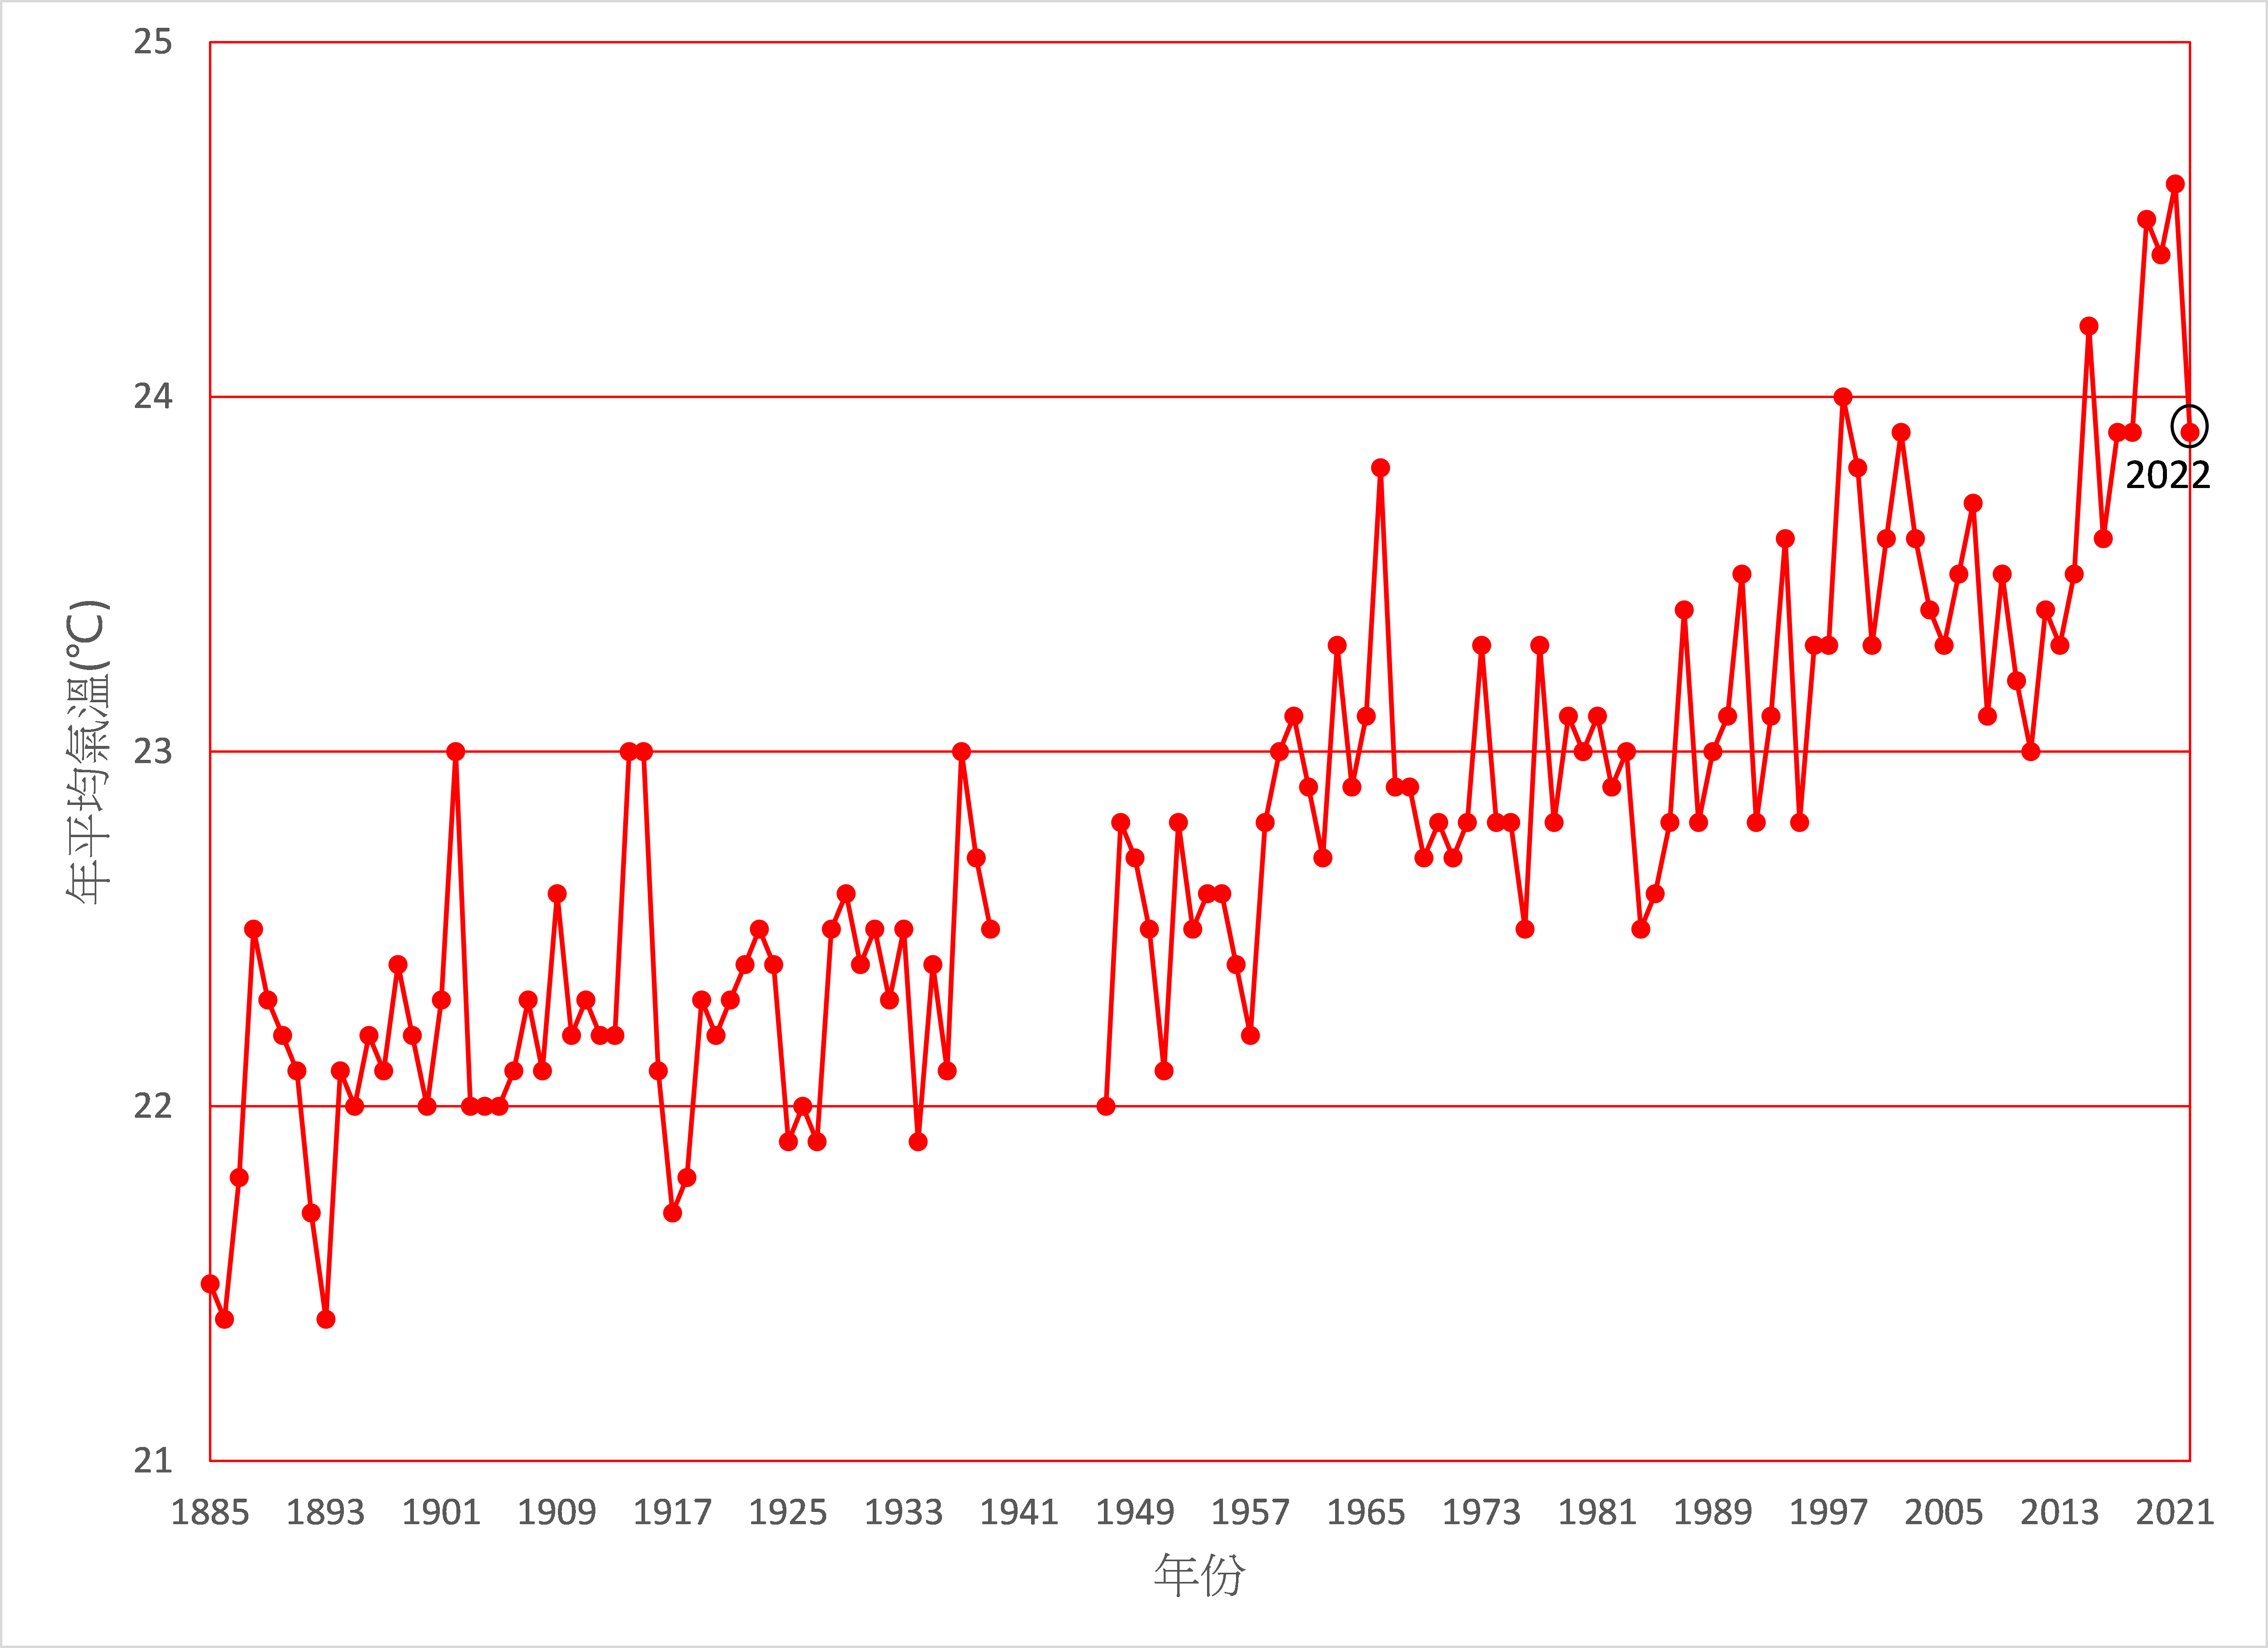 香港全年平均氣溫的長期時間序列 (1885-2022)